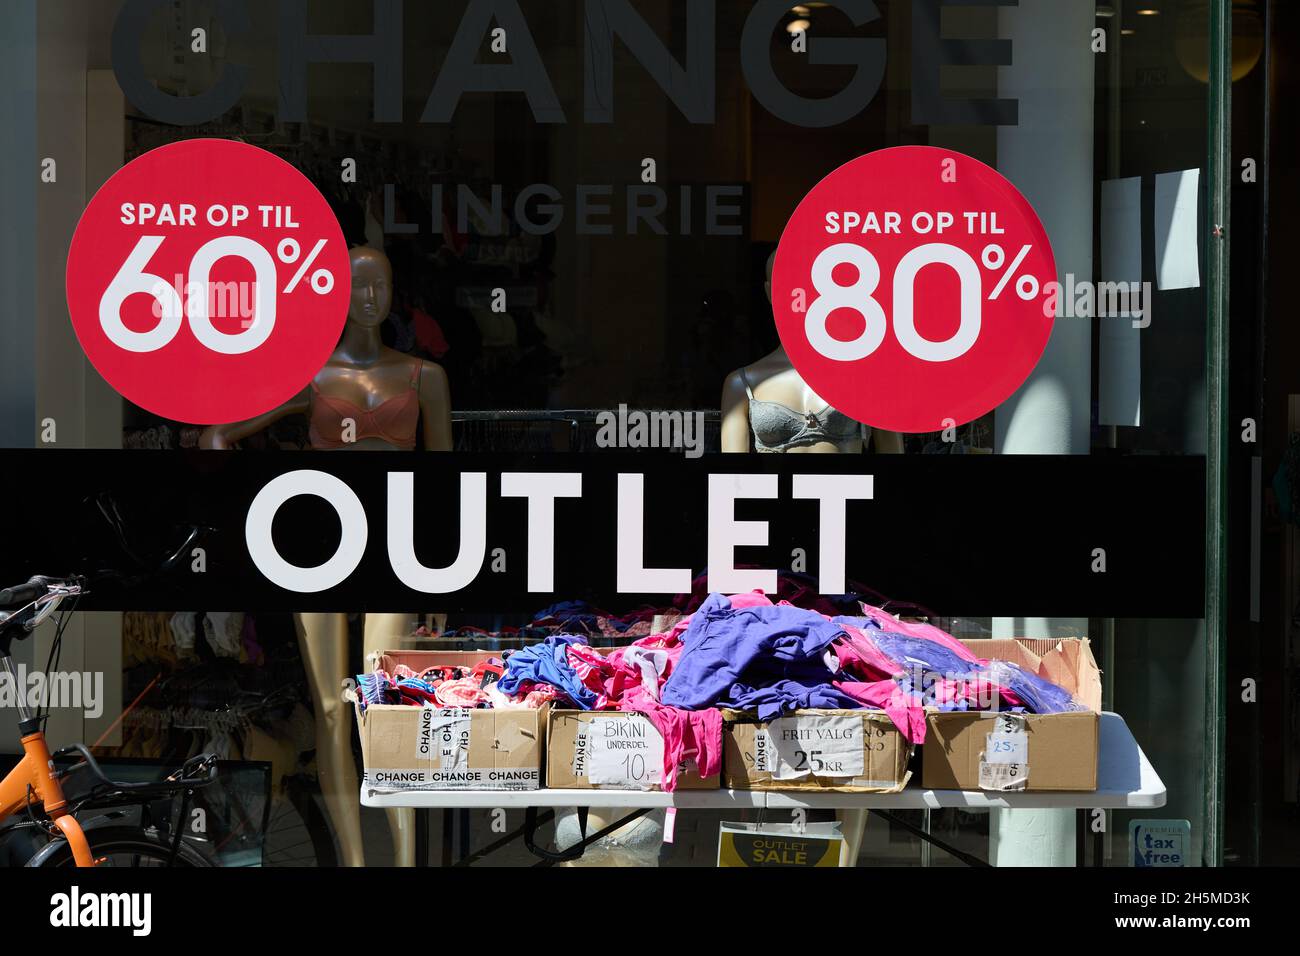 'Outlet', 'Spar op til 60%', 'Spar op til 80%' ('Salva fino al 60% / 80%'), insegne sul negozio di abbigliamento a prezzi scontati, Strøget, Copenhagen, Danimarca Foto Stock